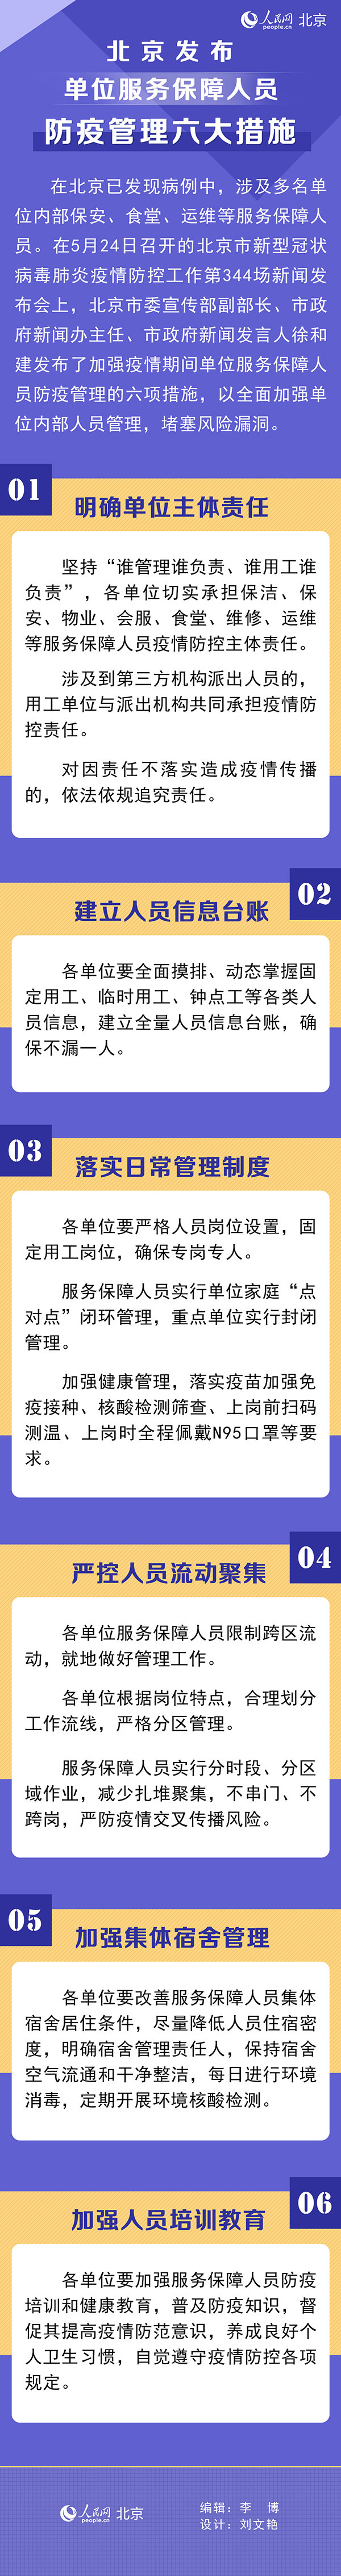 北京发布单位服务保障人员防疫管理六大措施